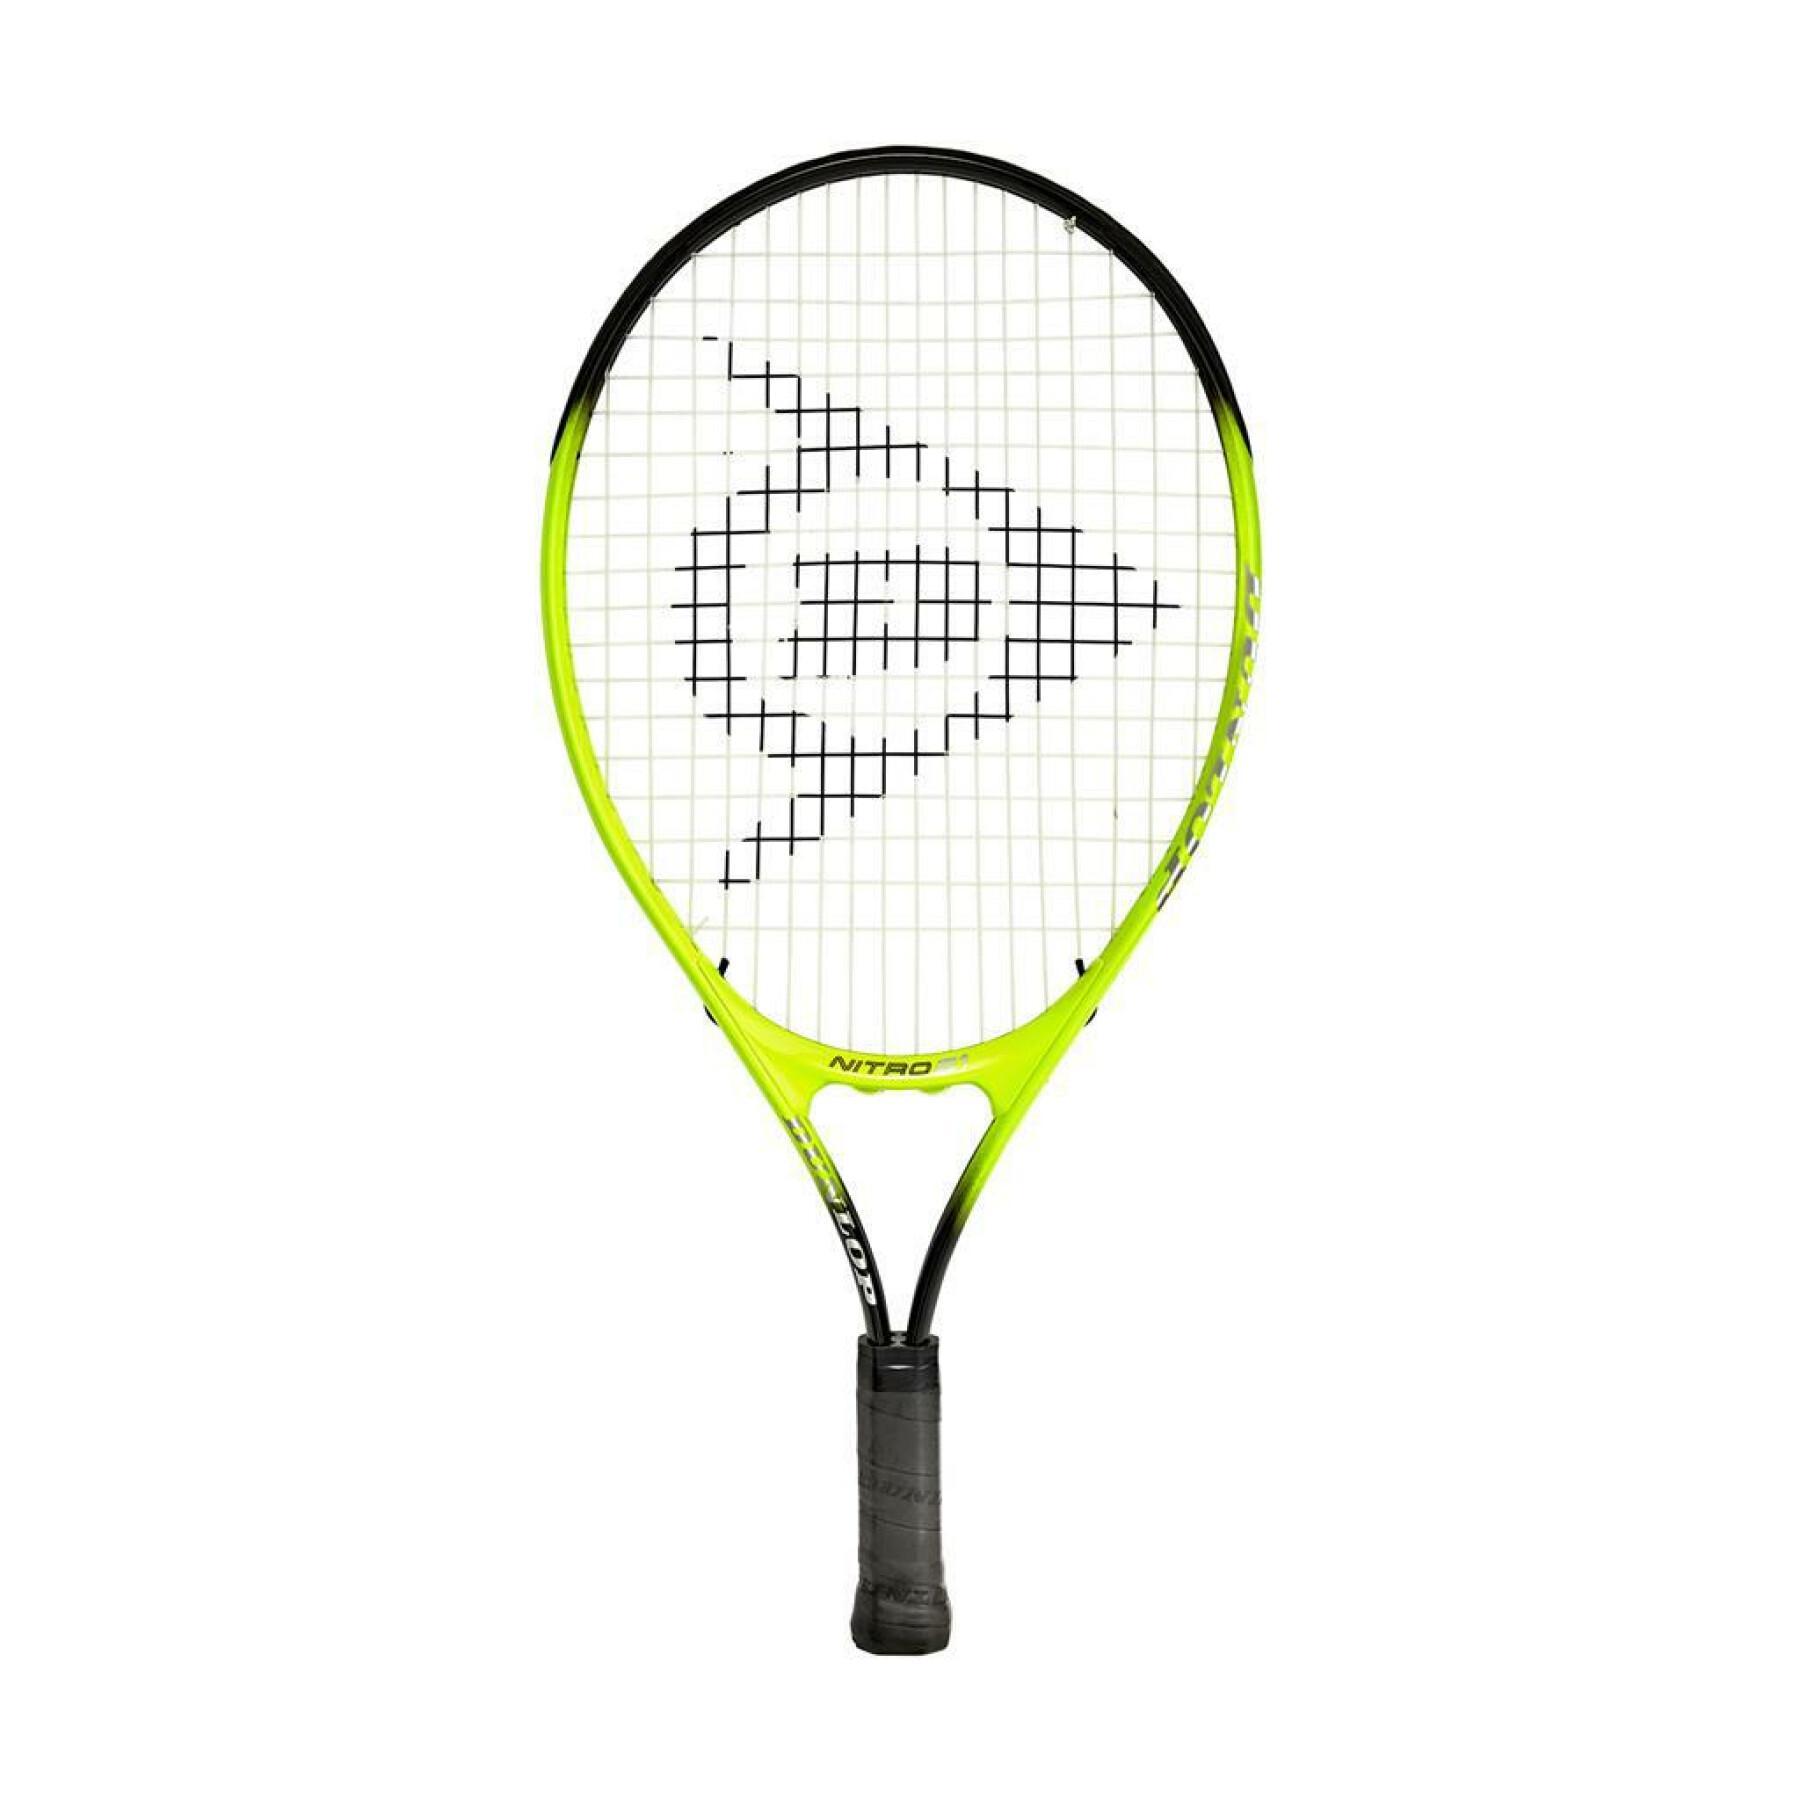 Children's racket Dunlop nitro 21 g000